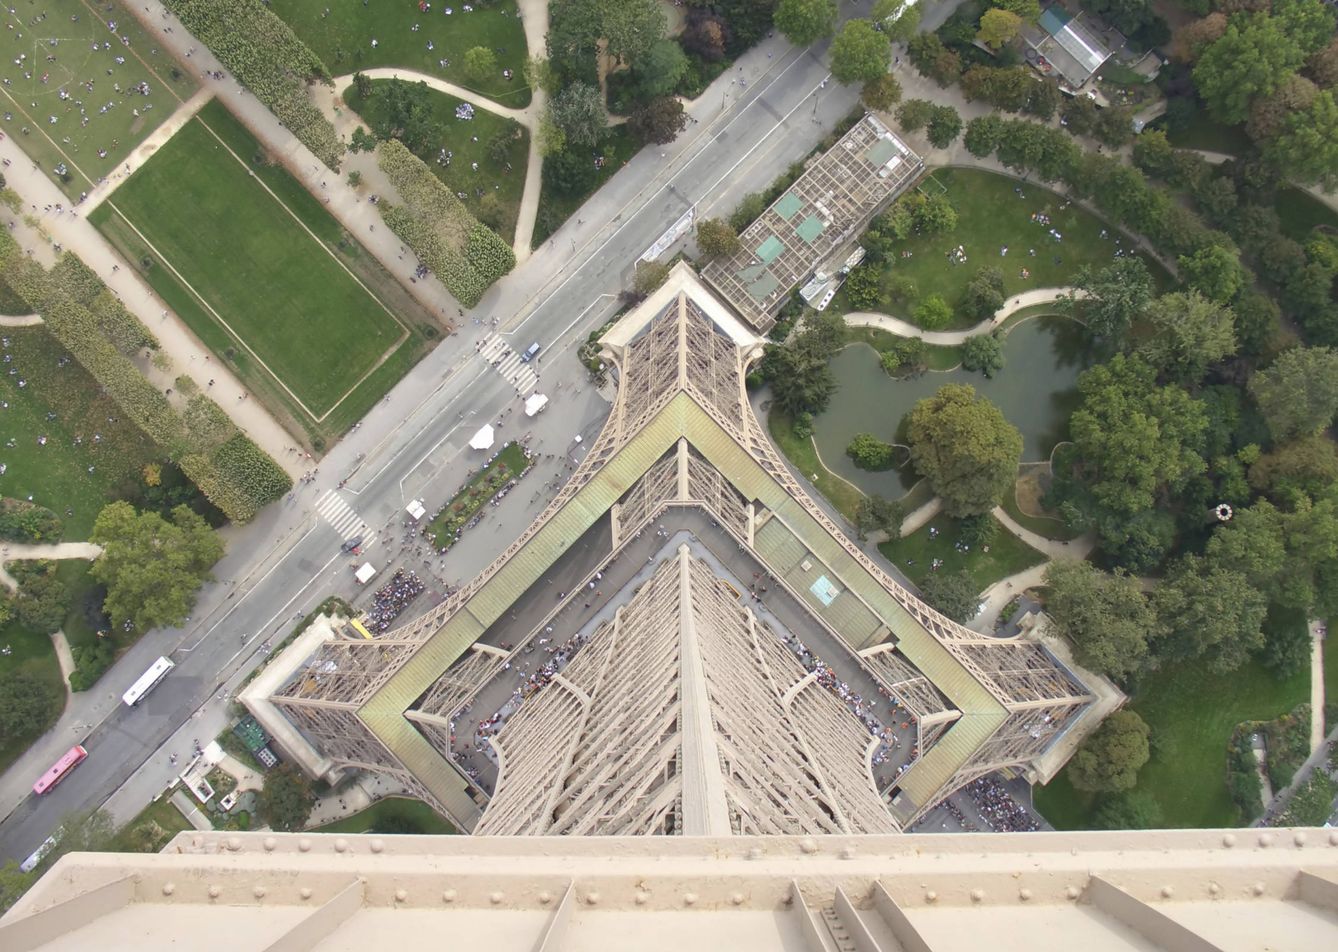 Vistas desde las alturas de la torre Eiffel. (iStock)